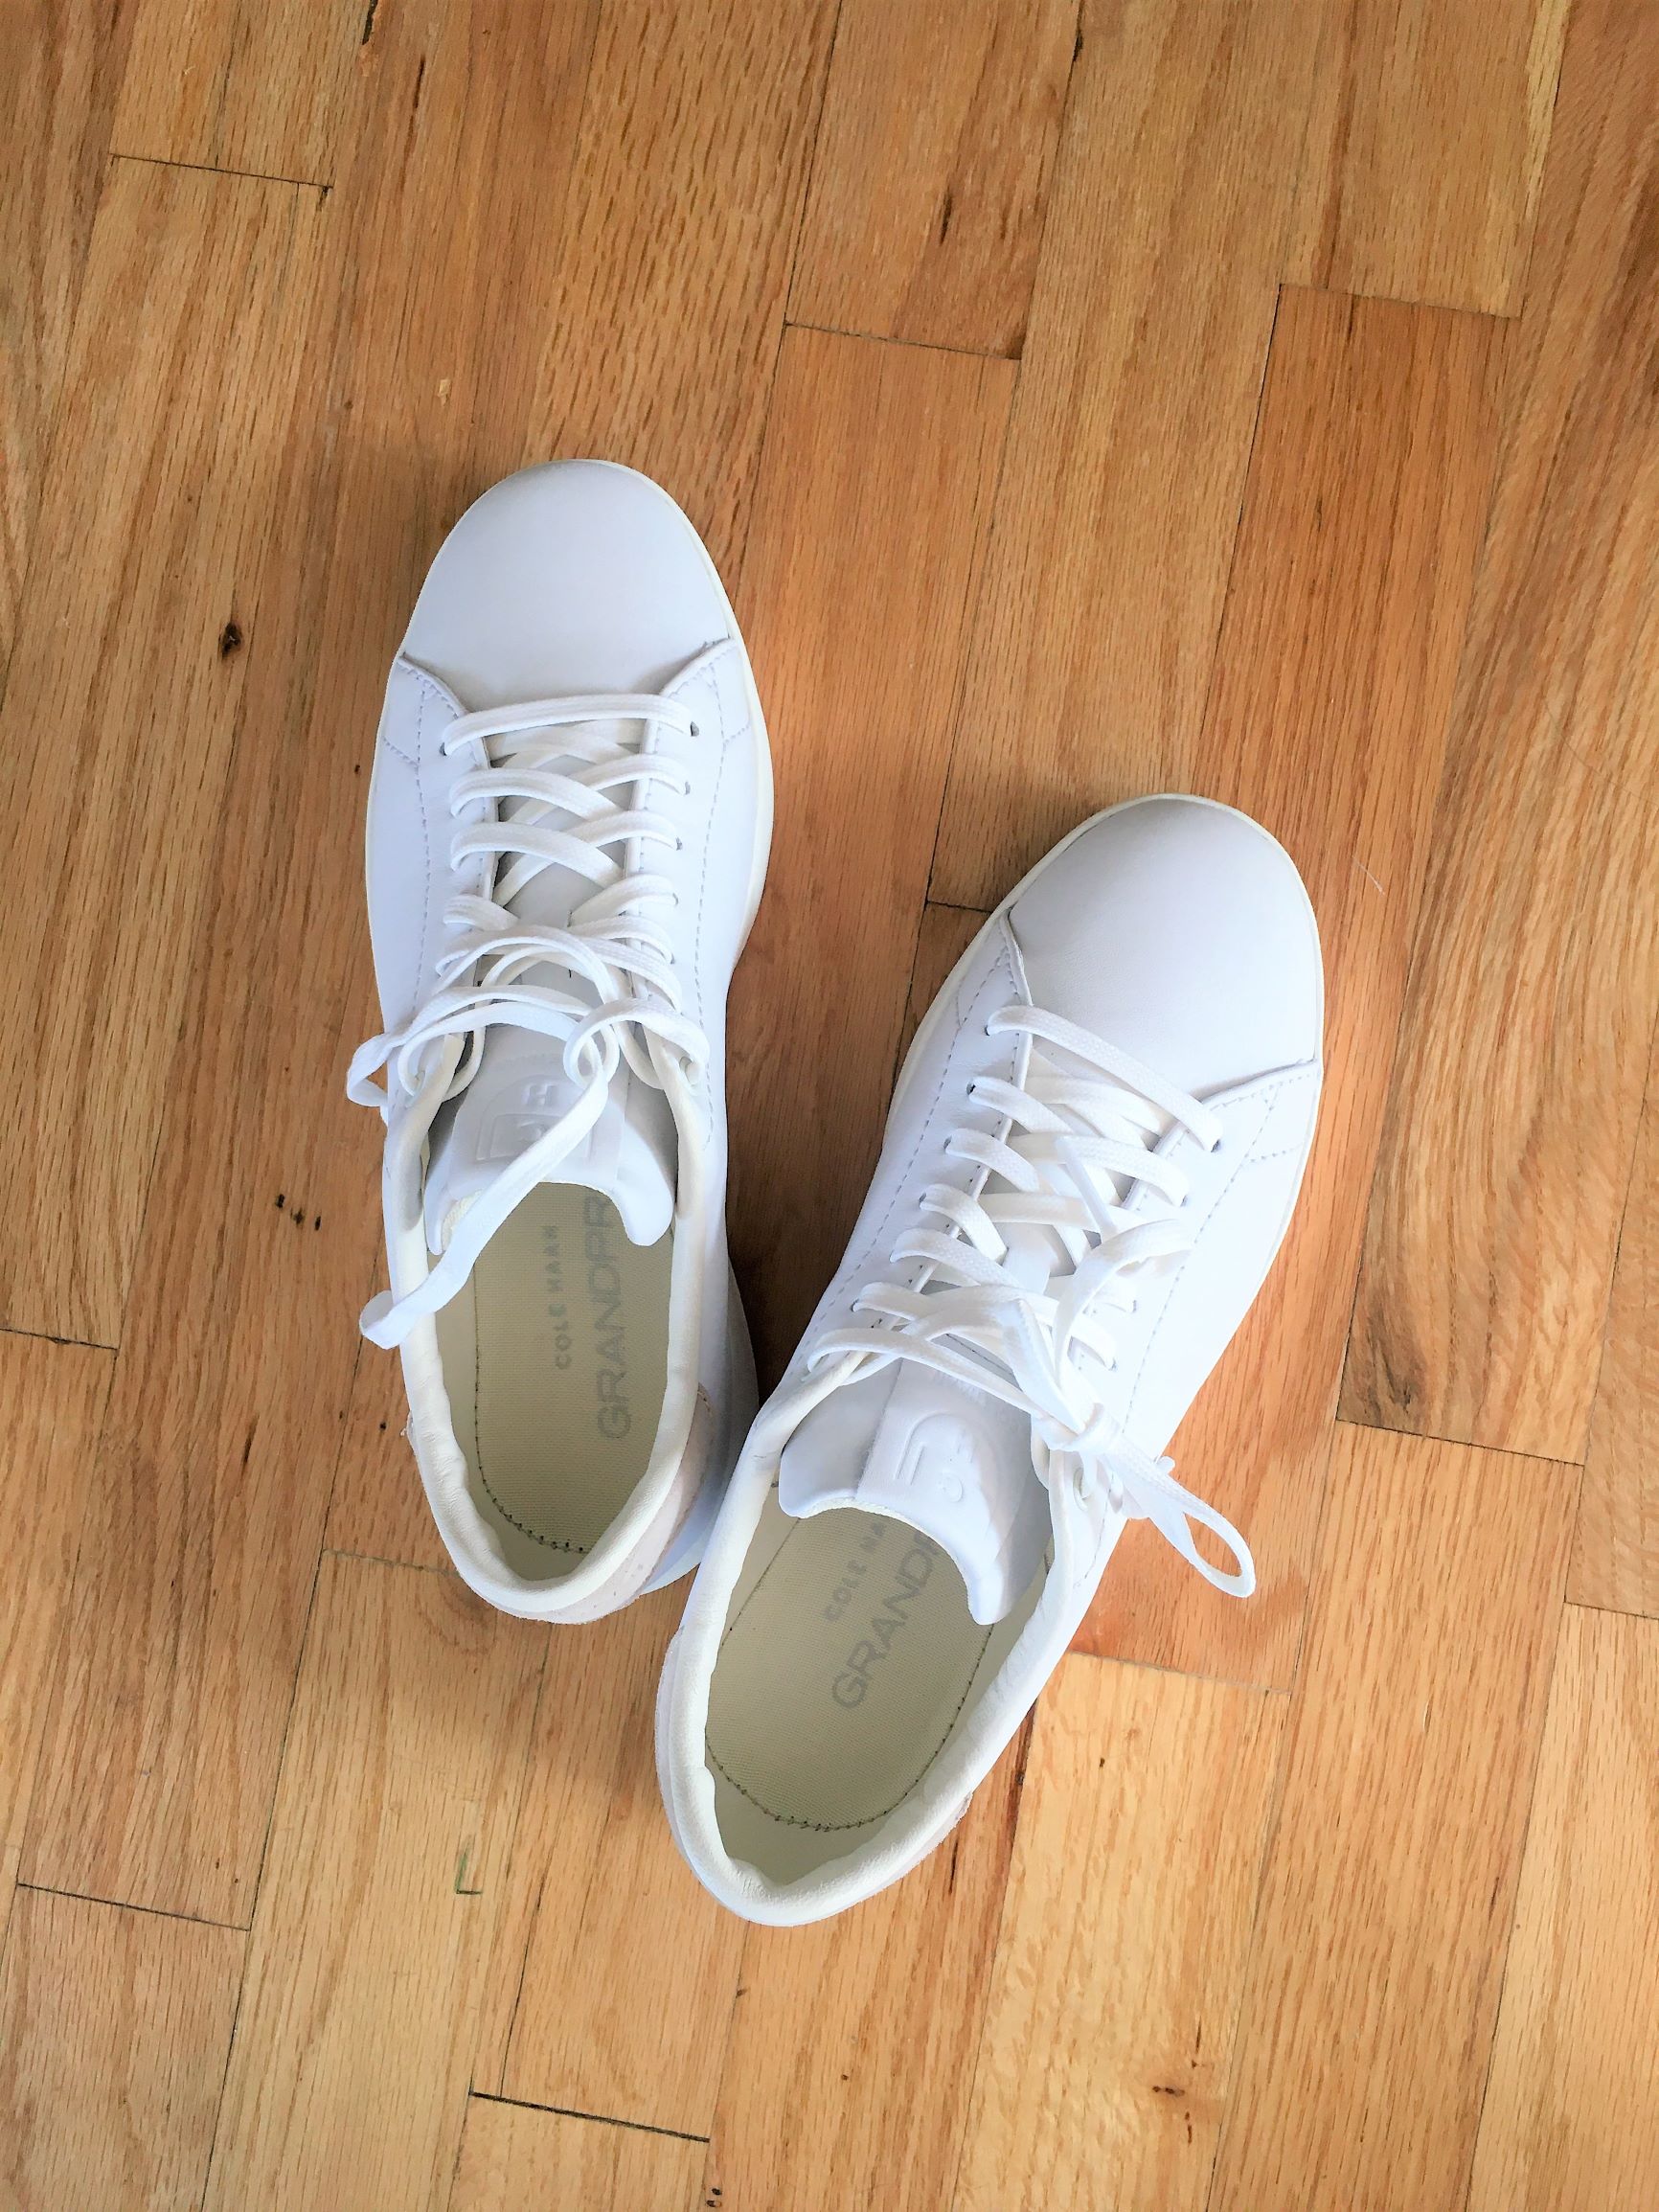 Cole Haan GrandPro Sneakers Review - Northwest Blonde